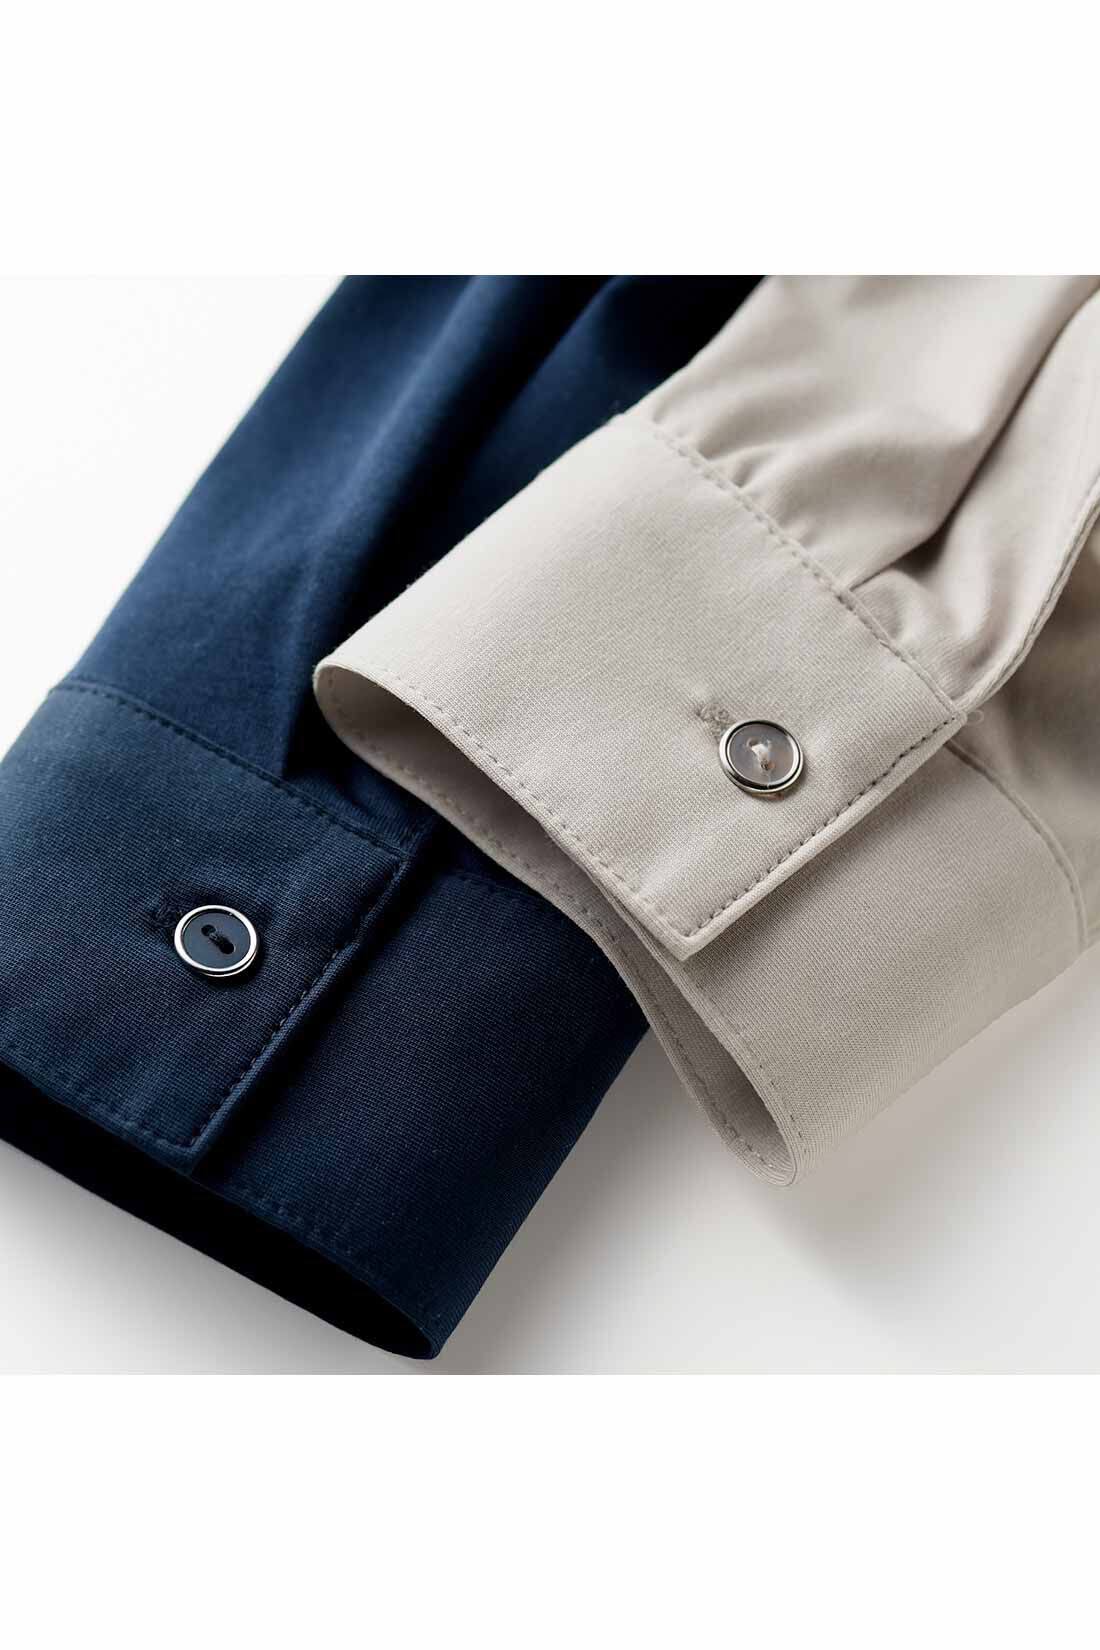 IEDIT[イディット]　らくちんにこなれる すっきり見えデザインのスキッパー美ノビシャツ〈ネイビー〉|身生地の色に合わせたボタンは、クール感を高めるシルバーのフレームでリッチな印象。